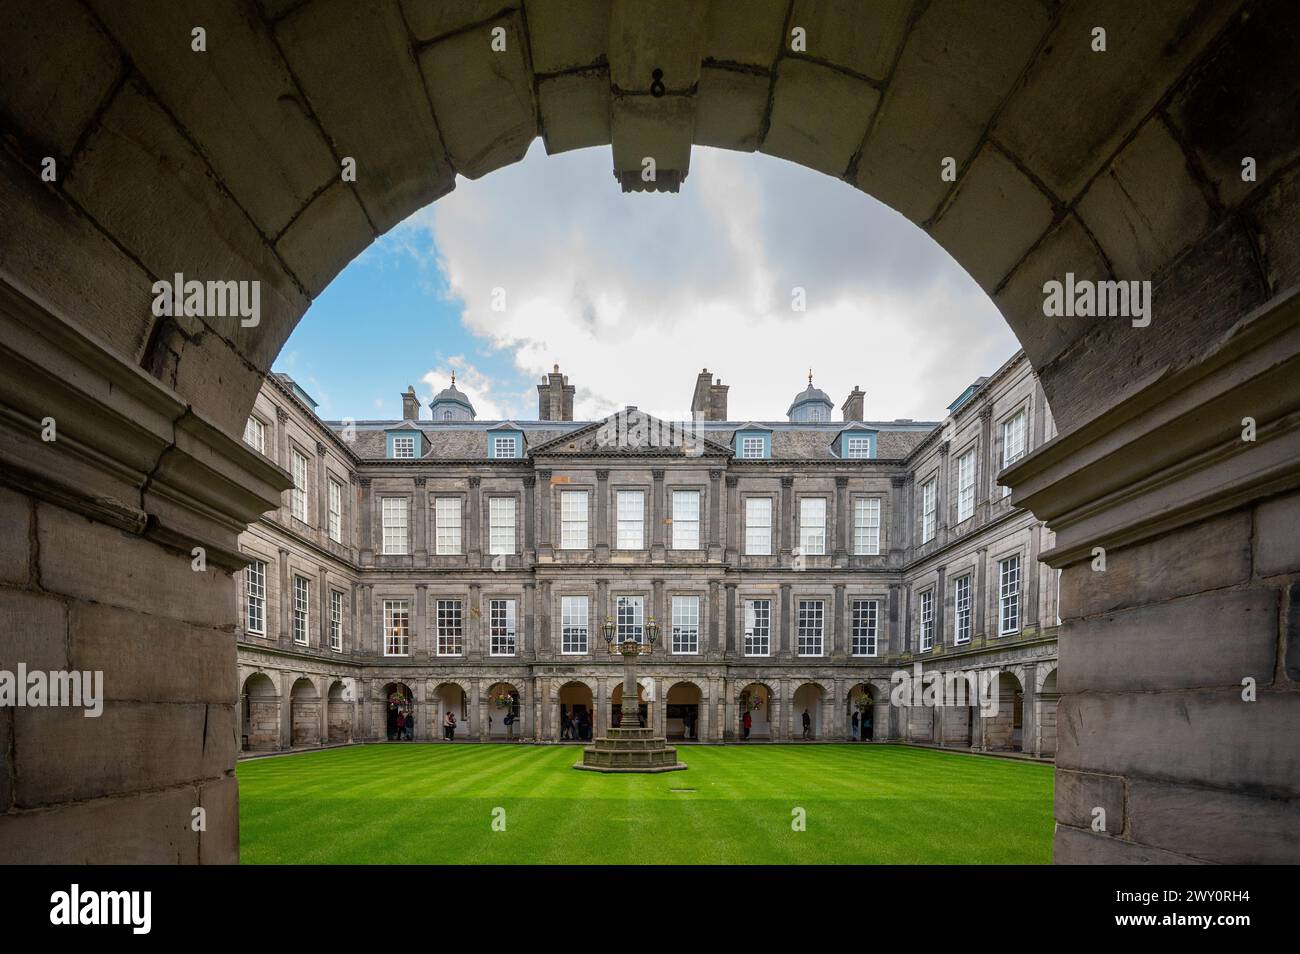 Interior courtyard of the Quadrangle of the Holyroodhouse, Royal Palace, Edinburgh, Scotland, UK Stock Photo